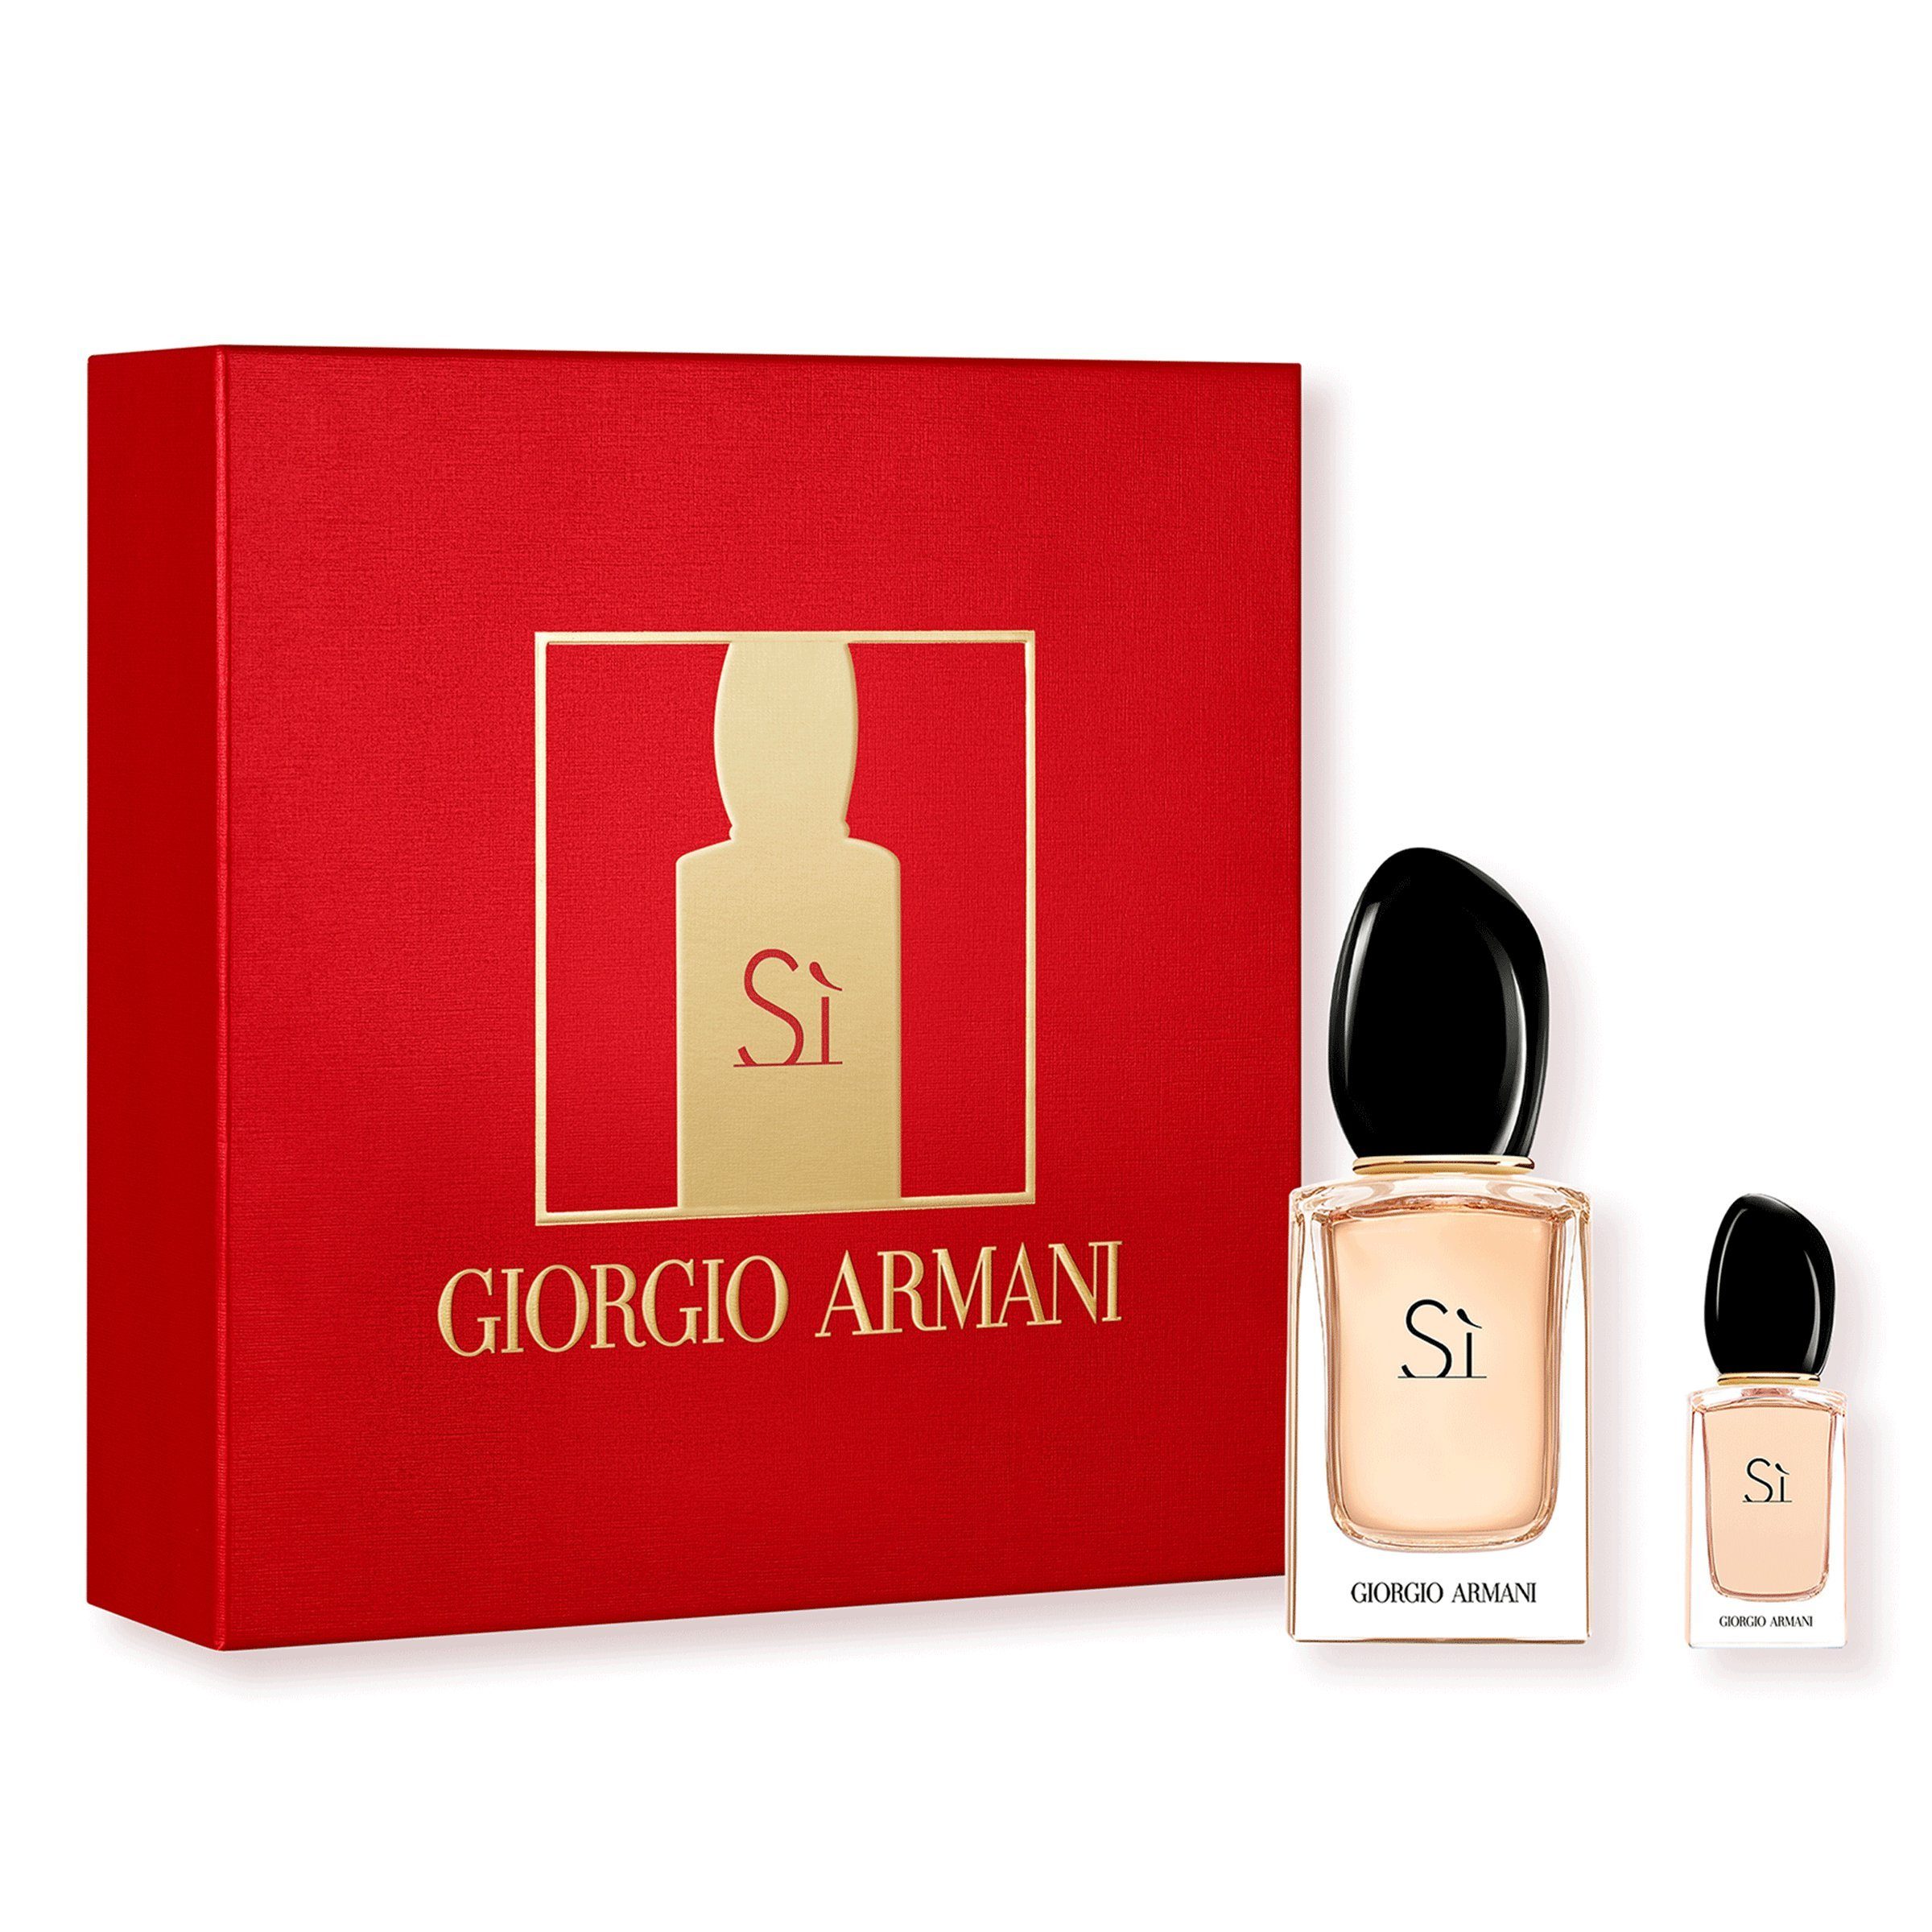 Giorgio Armani Duft-Set Si, Geschenkset online kaufen | OTTO